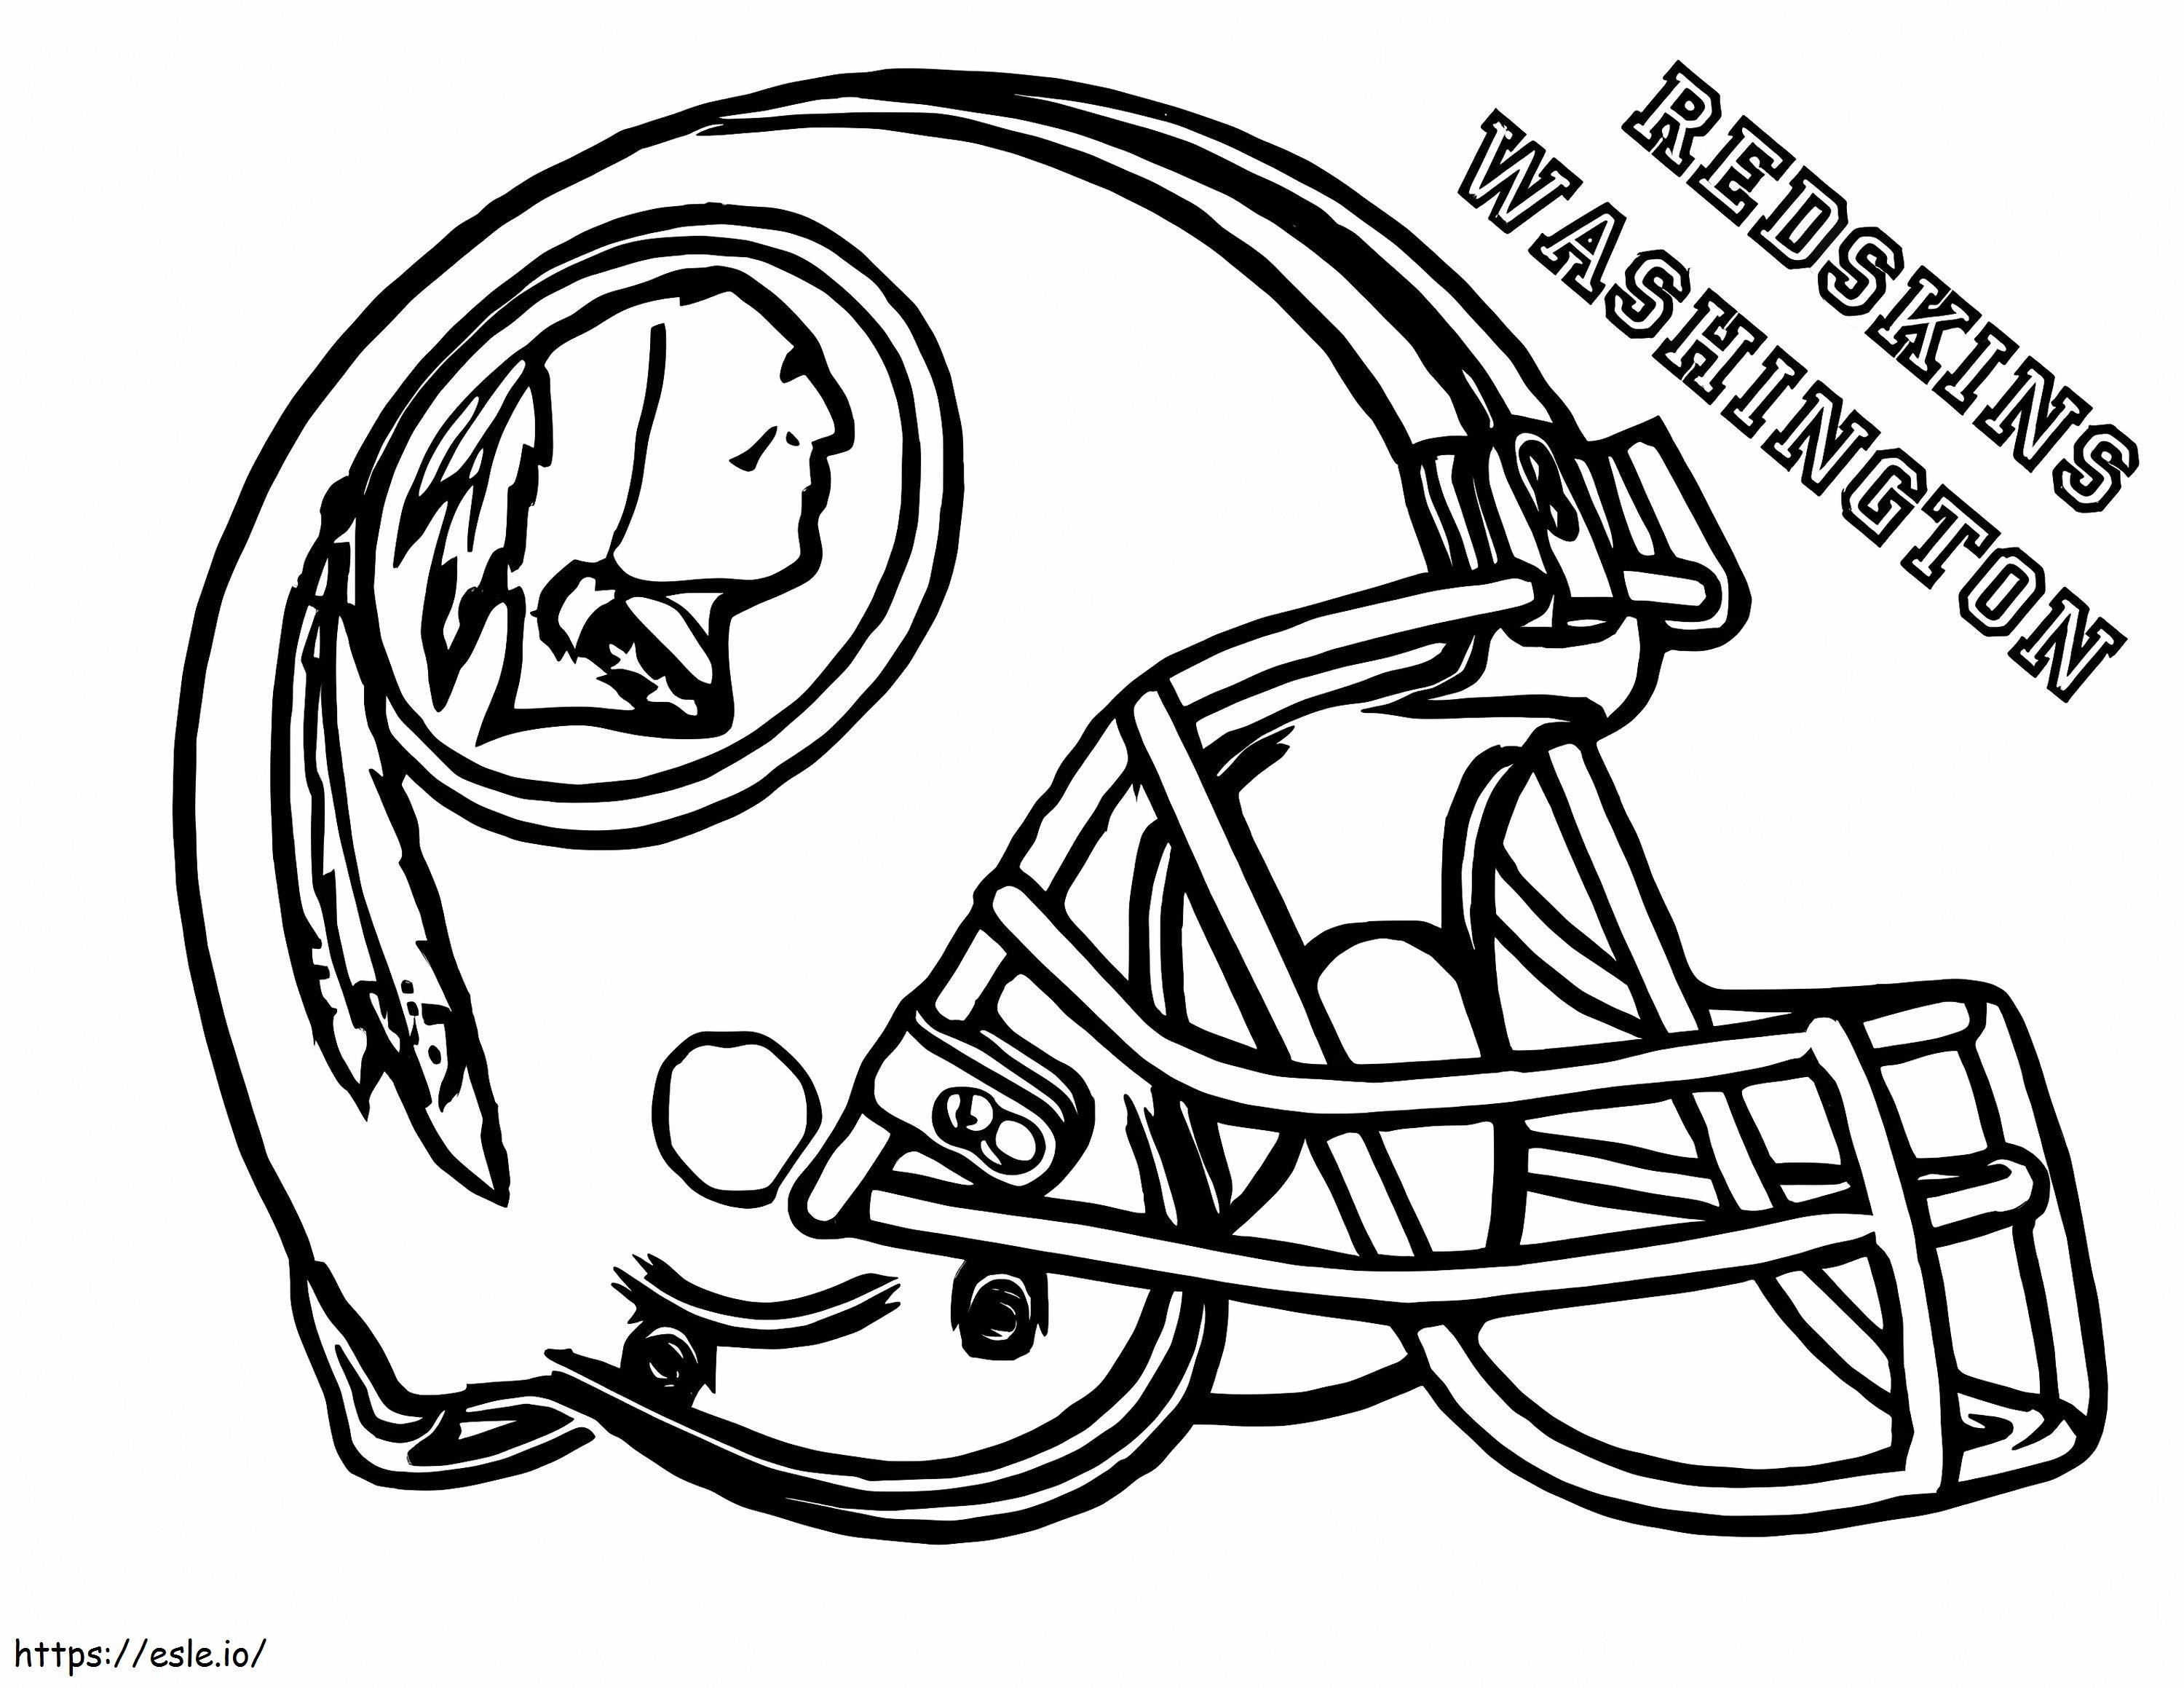 Redskins Washington coloring page